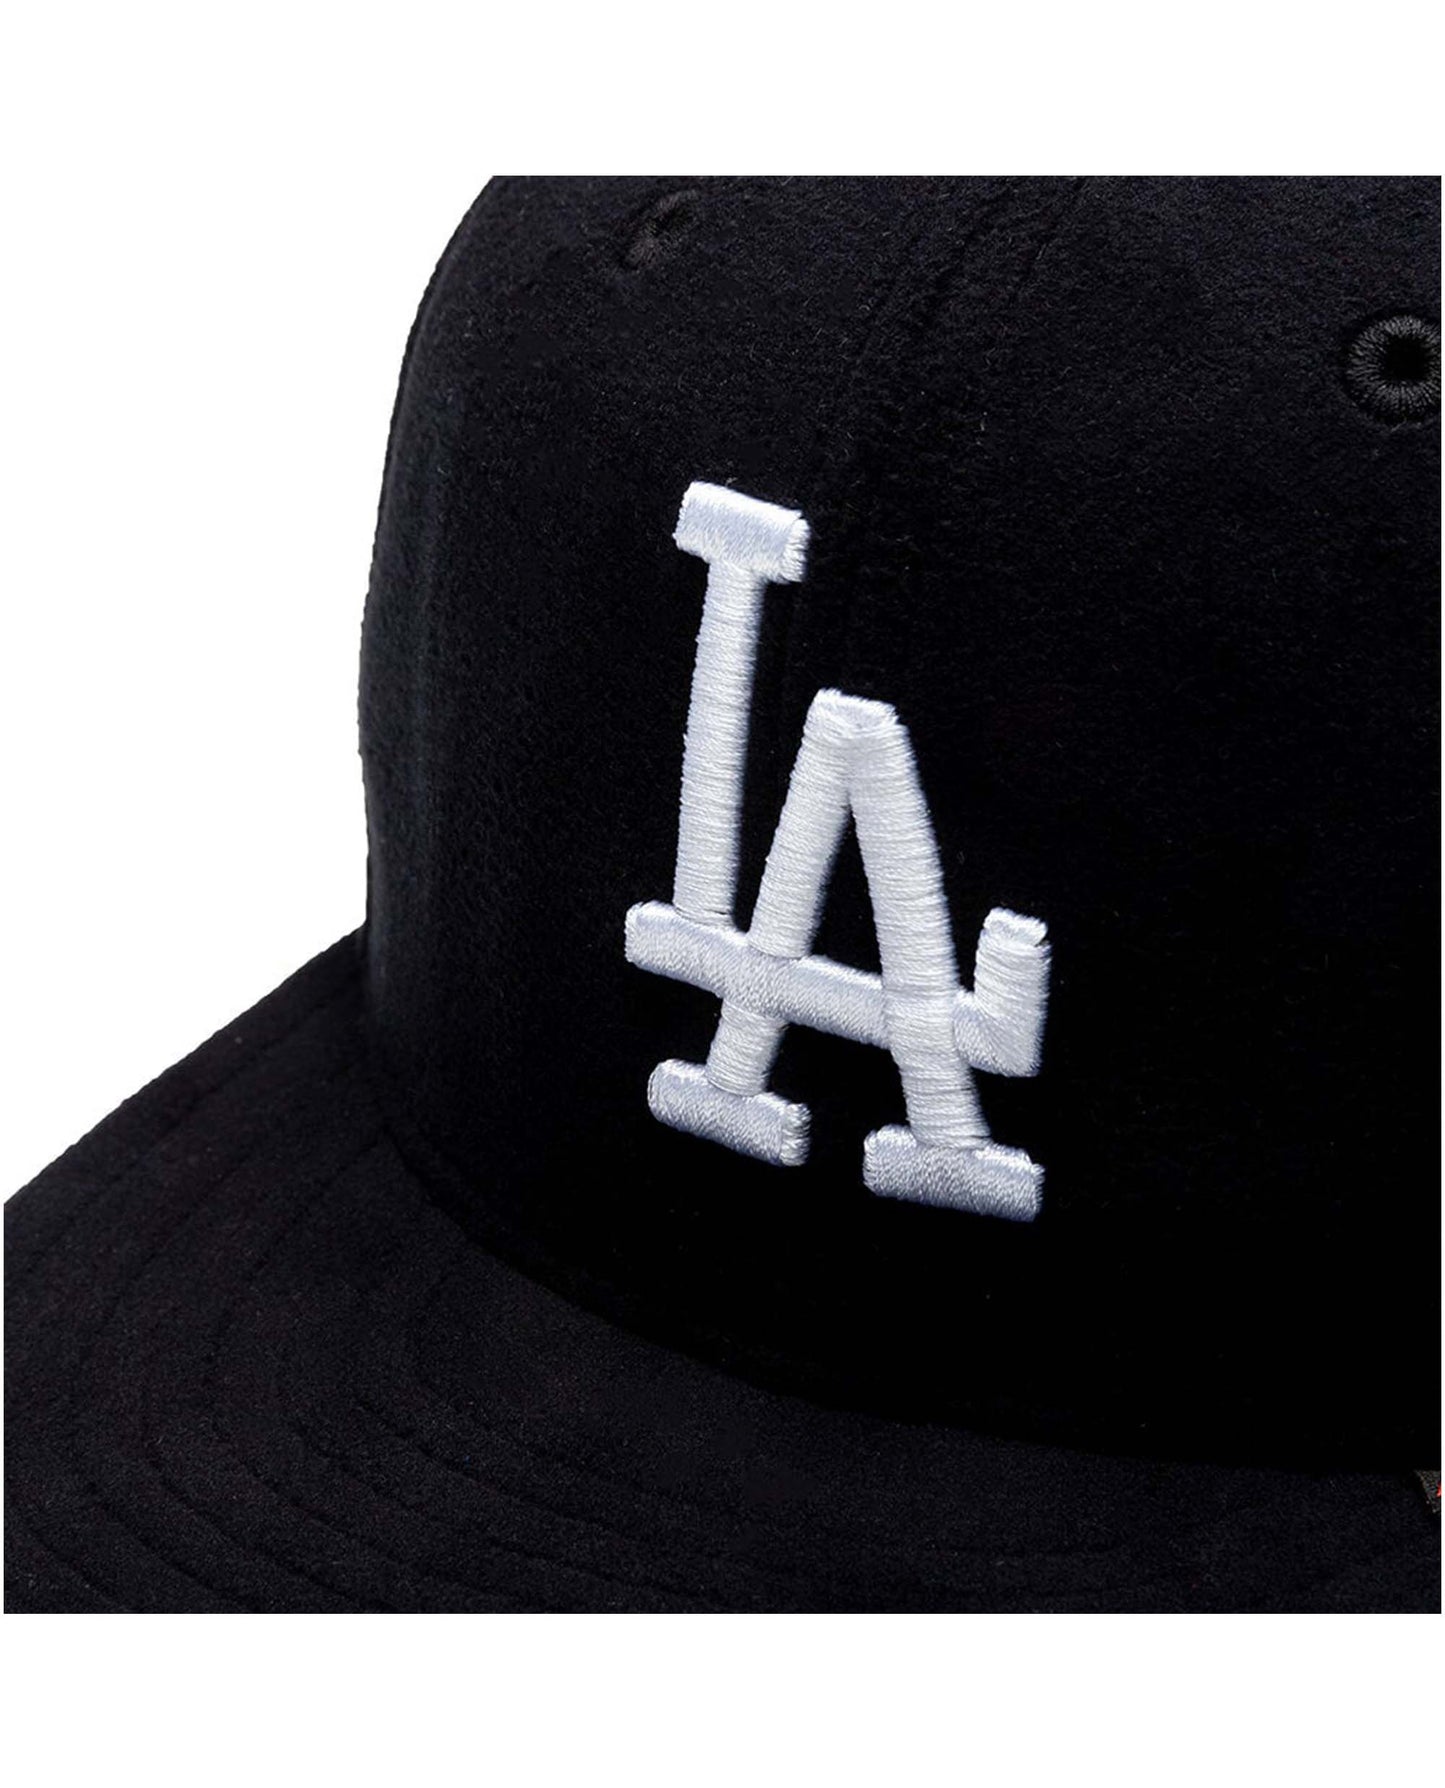 
                    
                      New Era PolarTec 5950 Los Angeles Dodgers Black
                    
                  